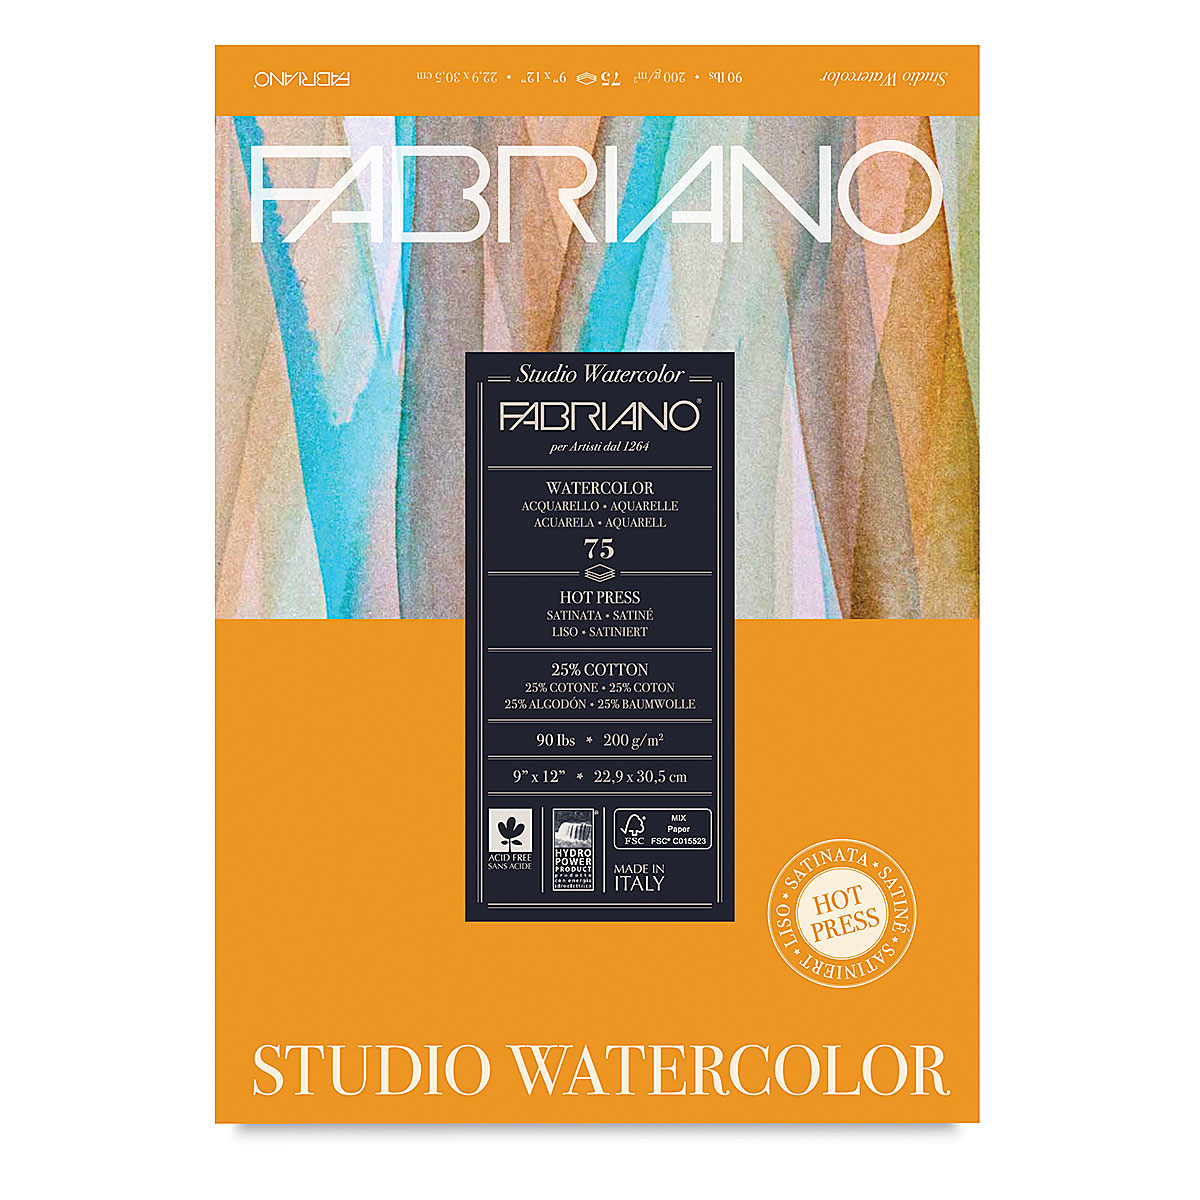 Fabriano Studio Watercolour Pad 300gsm Hot Press